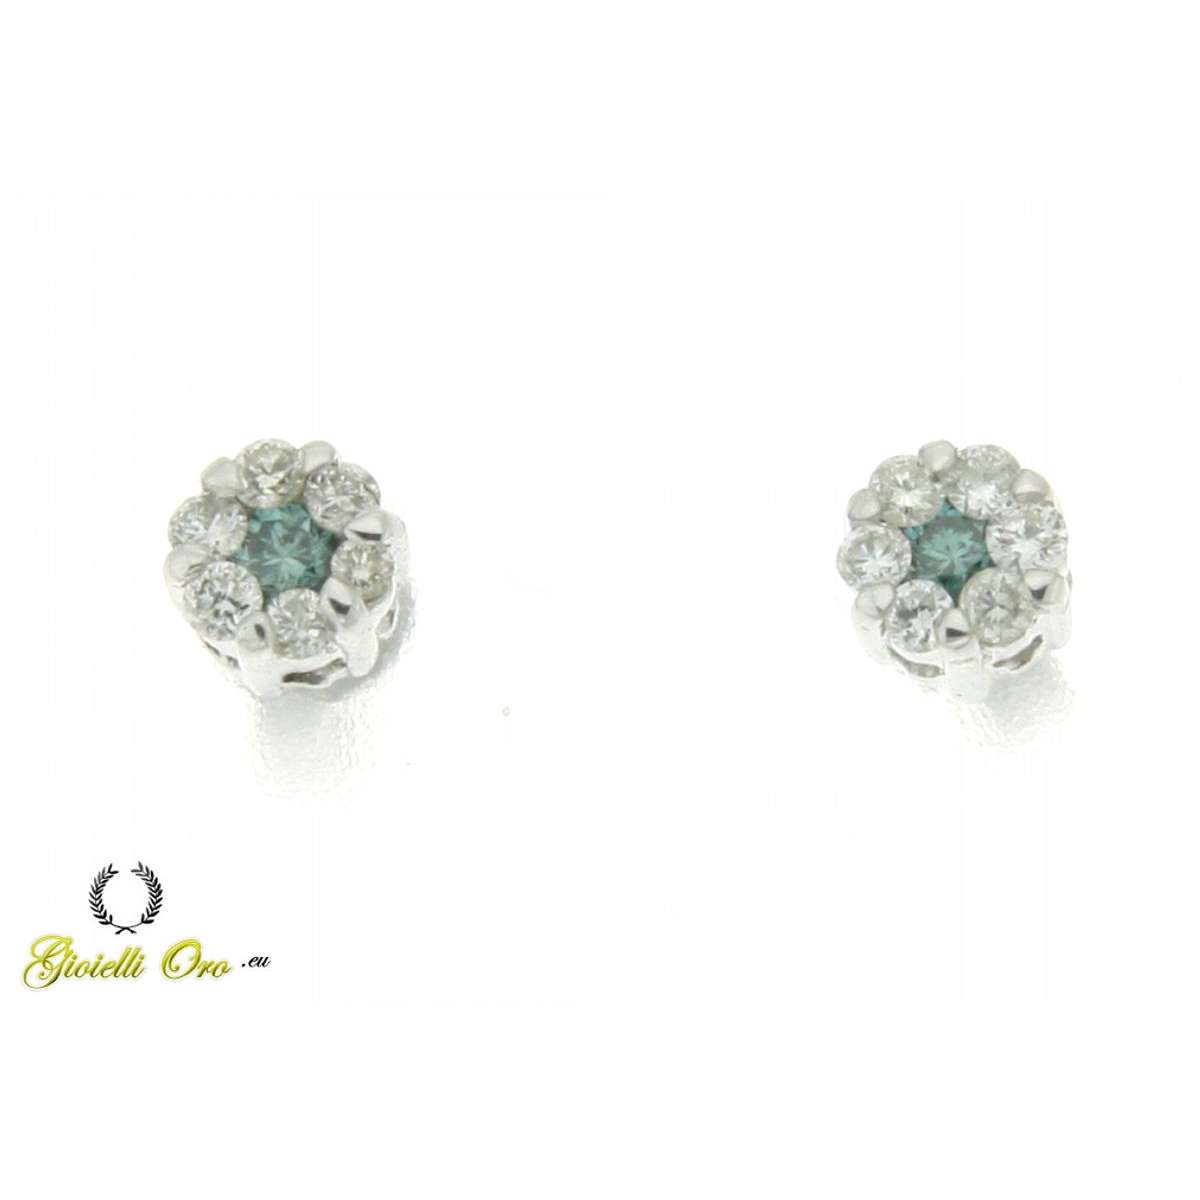 Fancy solitaire earrings 0.43 carats diamonds G-VS1